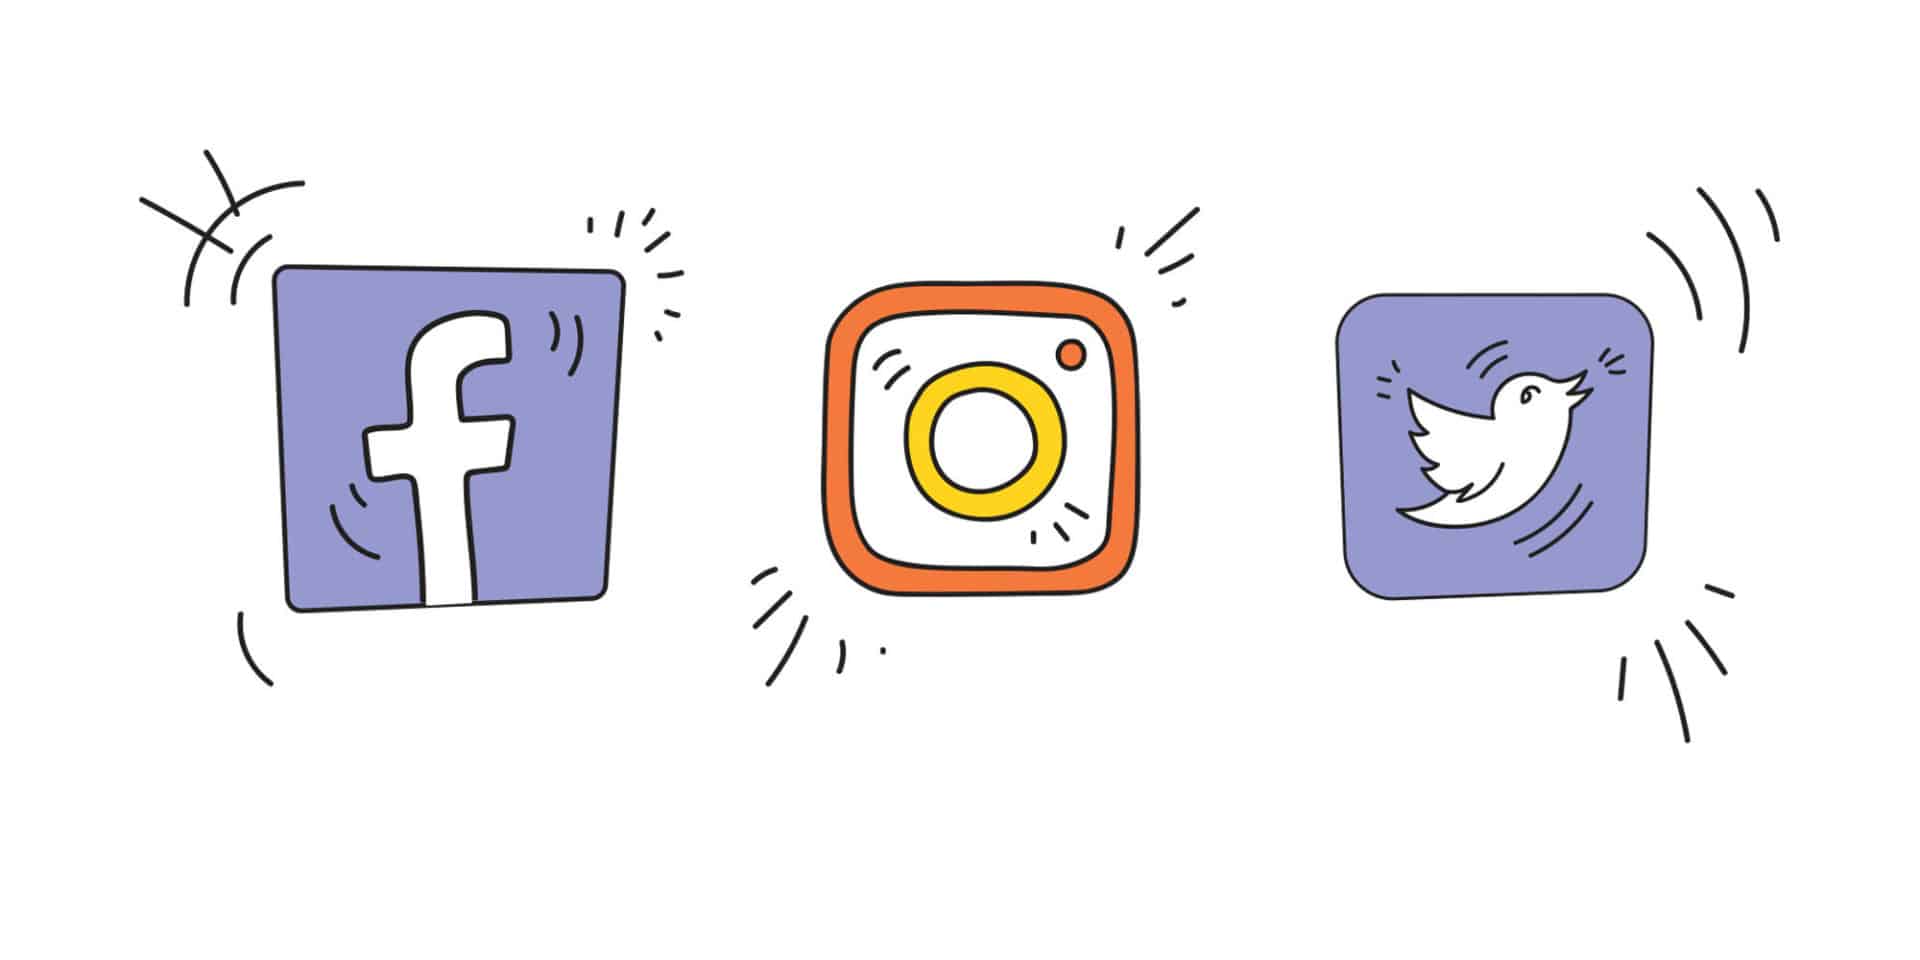 Piirroskuvina Facebookin, Instagramin ja Twitterin logot